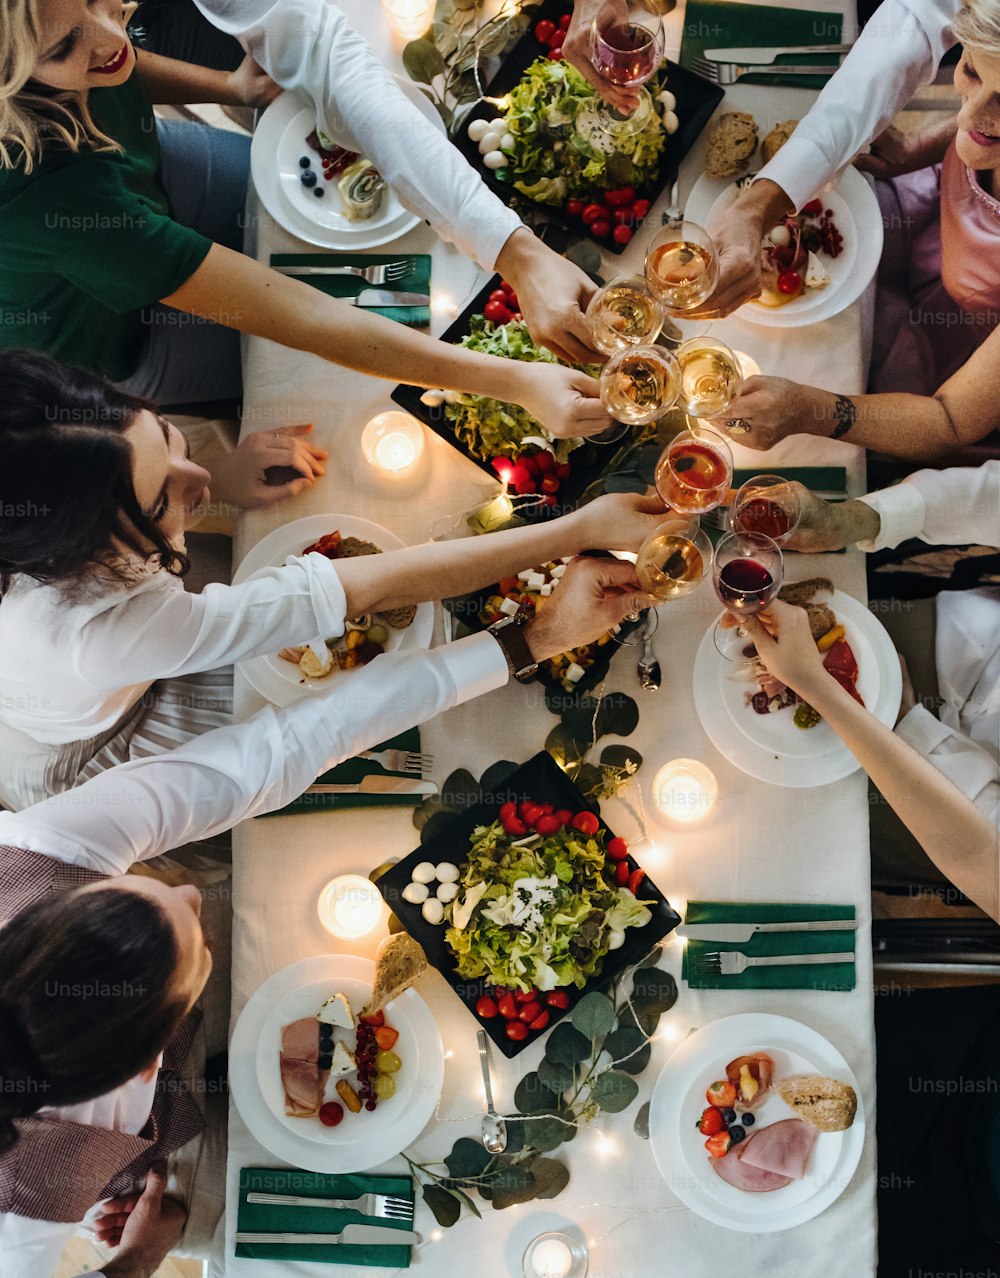 Un échantillon central de grande famille ou d’amis assis à une table lors d’une fête d’anniversaire à l’intérieur, faisant claquer des verres. Une vue de dessus.